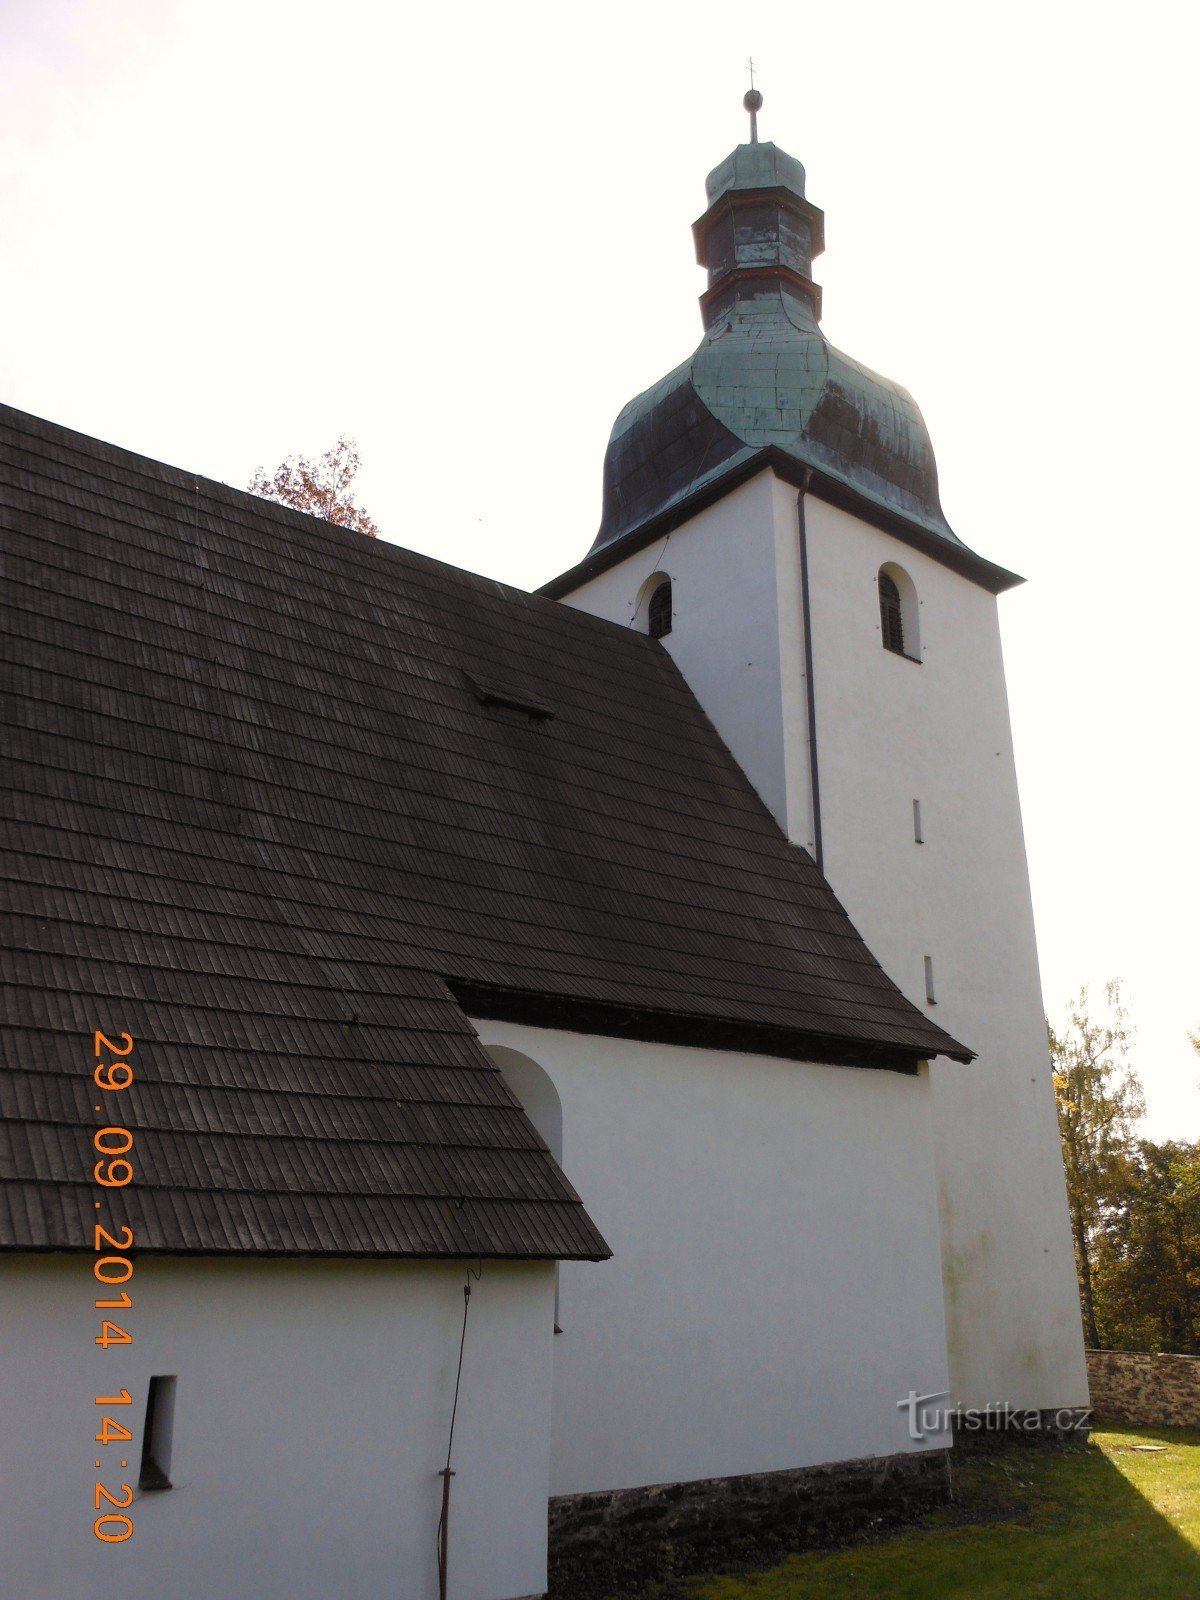 Nhà thờ Romanesque ở Kostelní